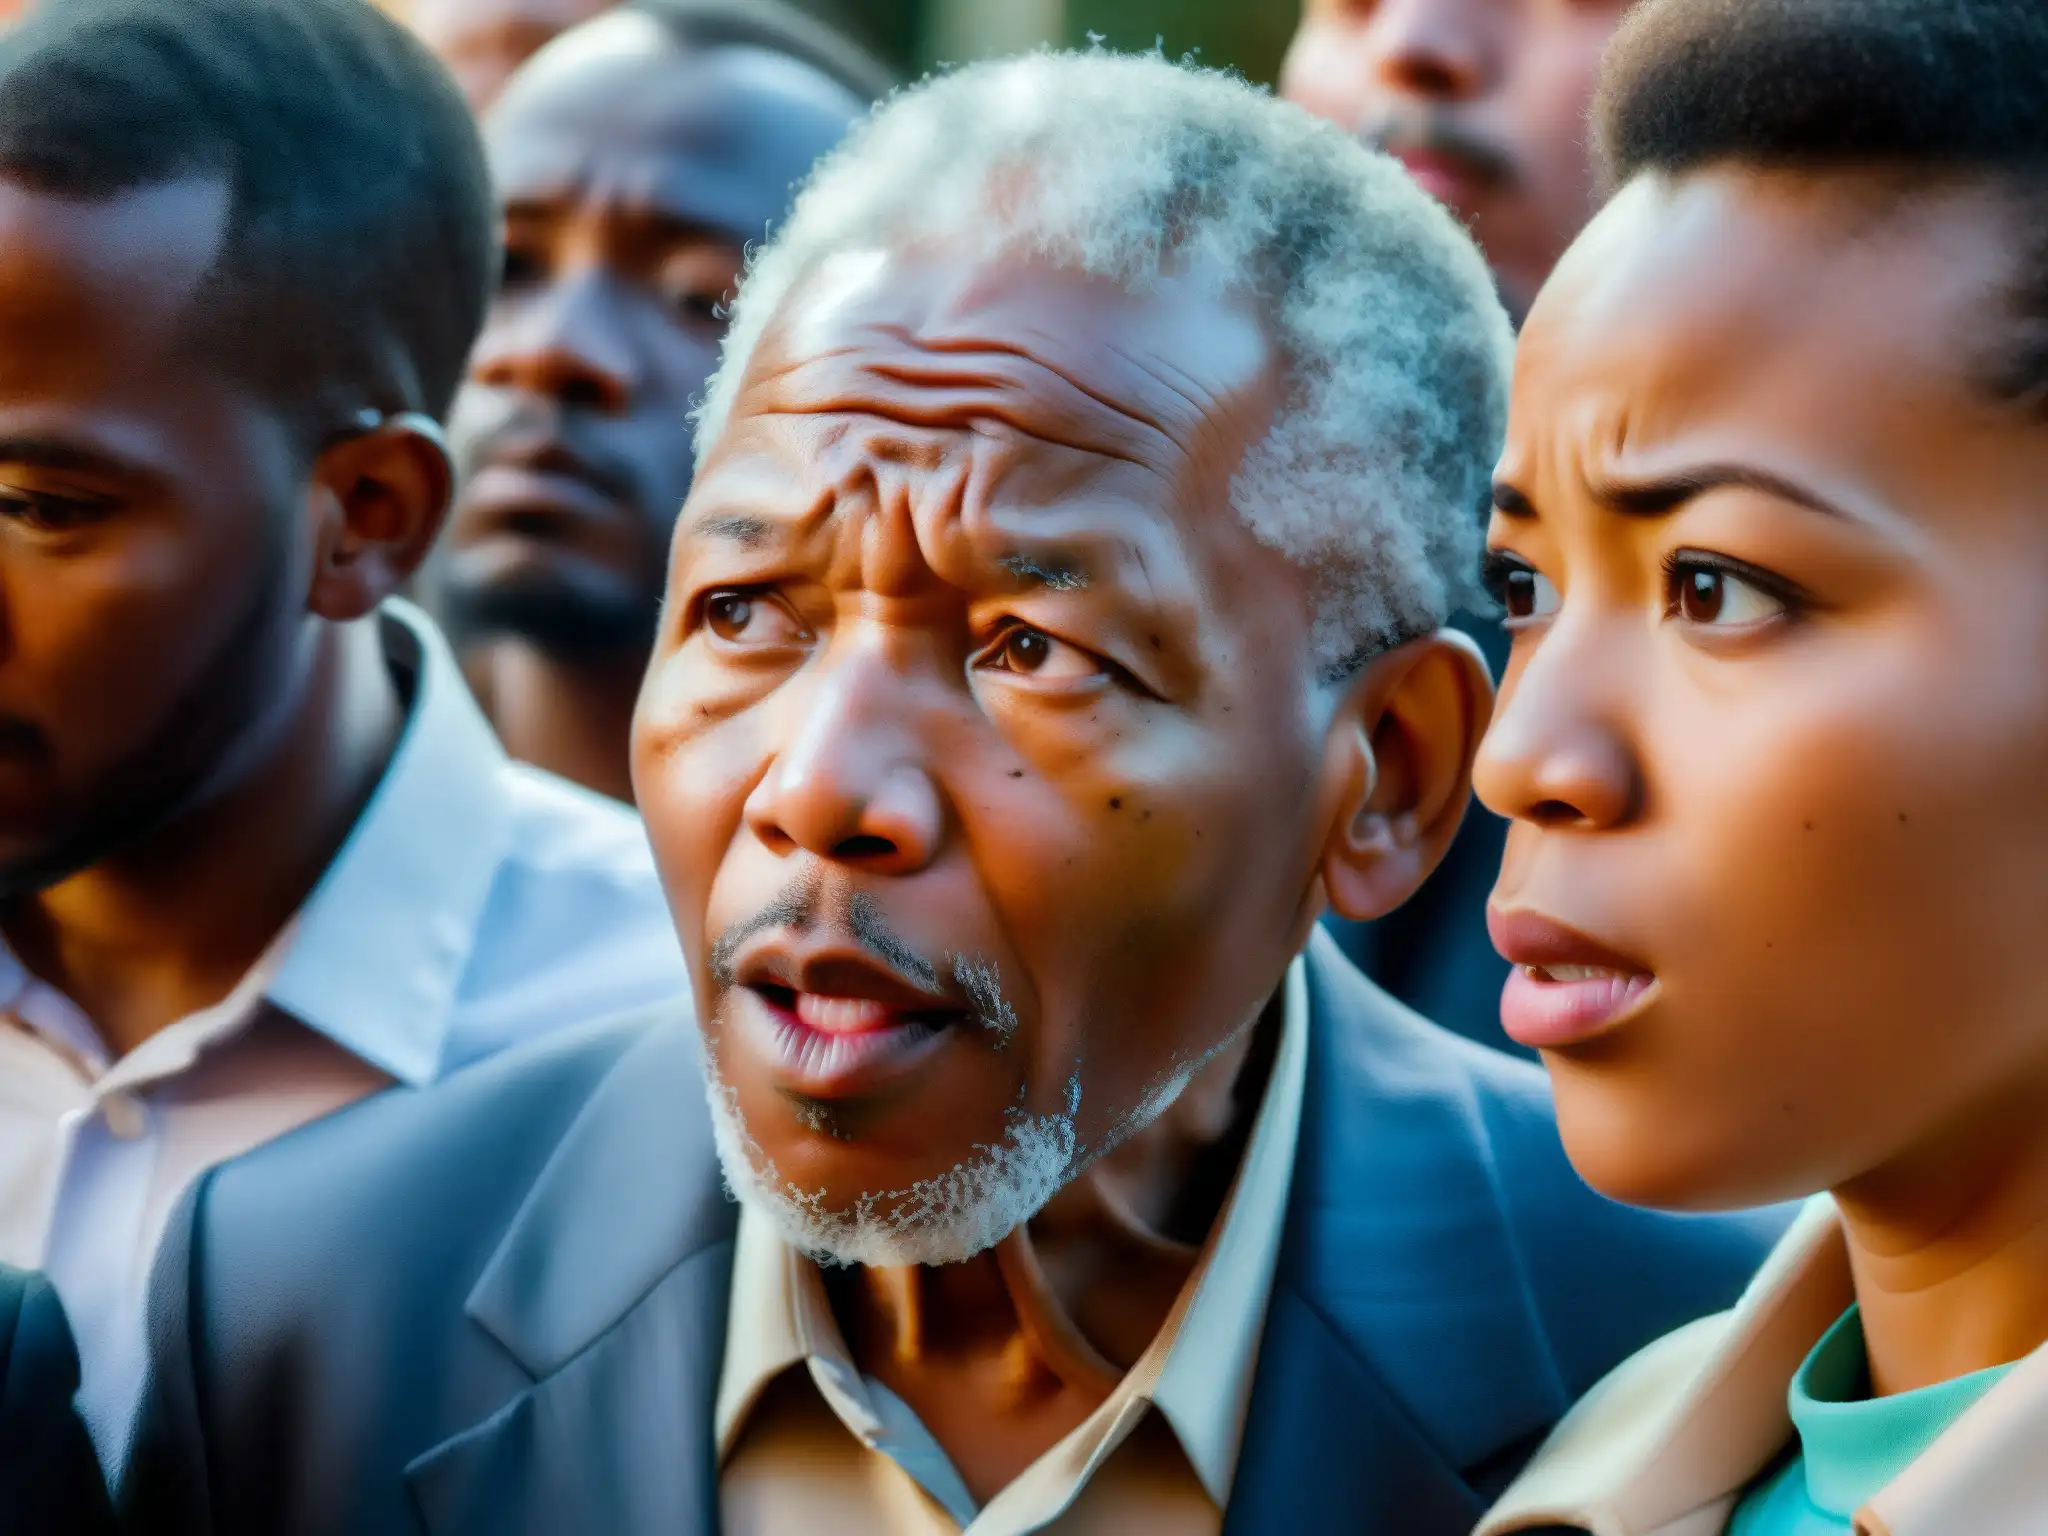 Una intensa discusión sobre distorsiones memoria colectiva efecto Mandela